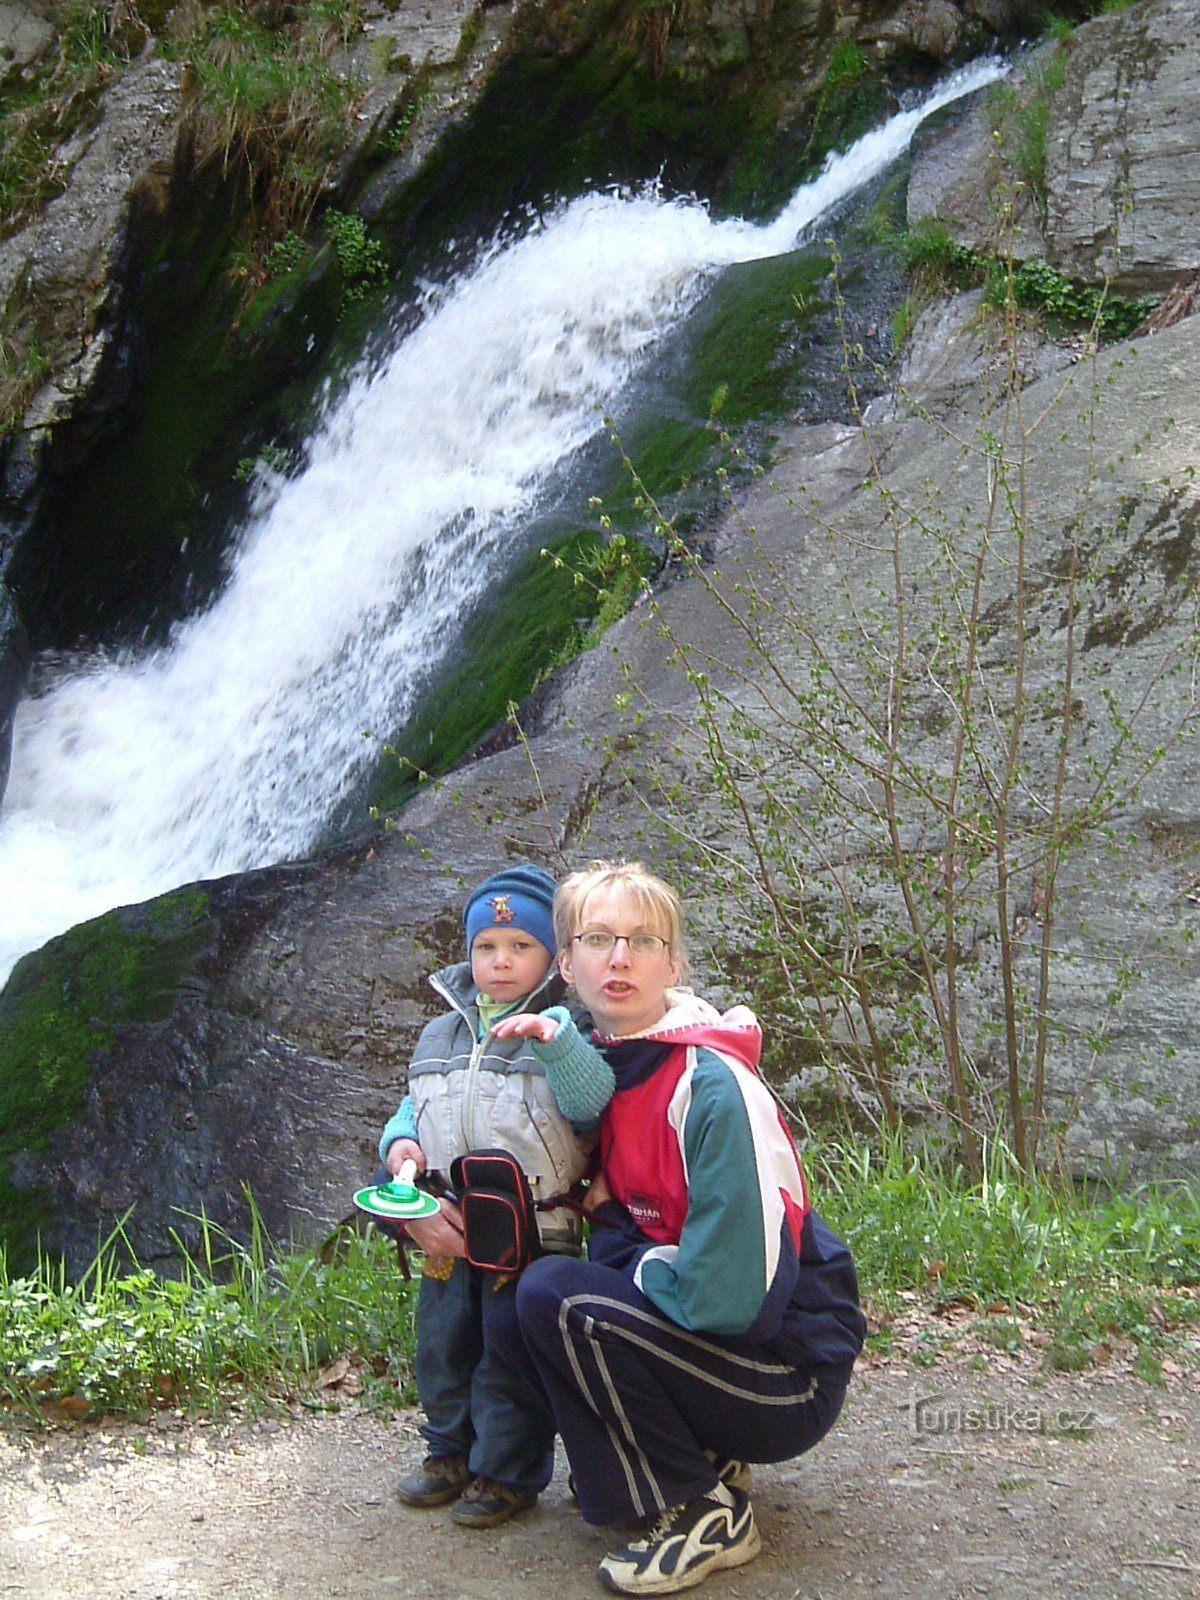 Rešov vattenfall nära byn Rešov